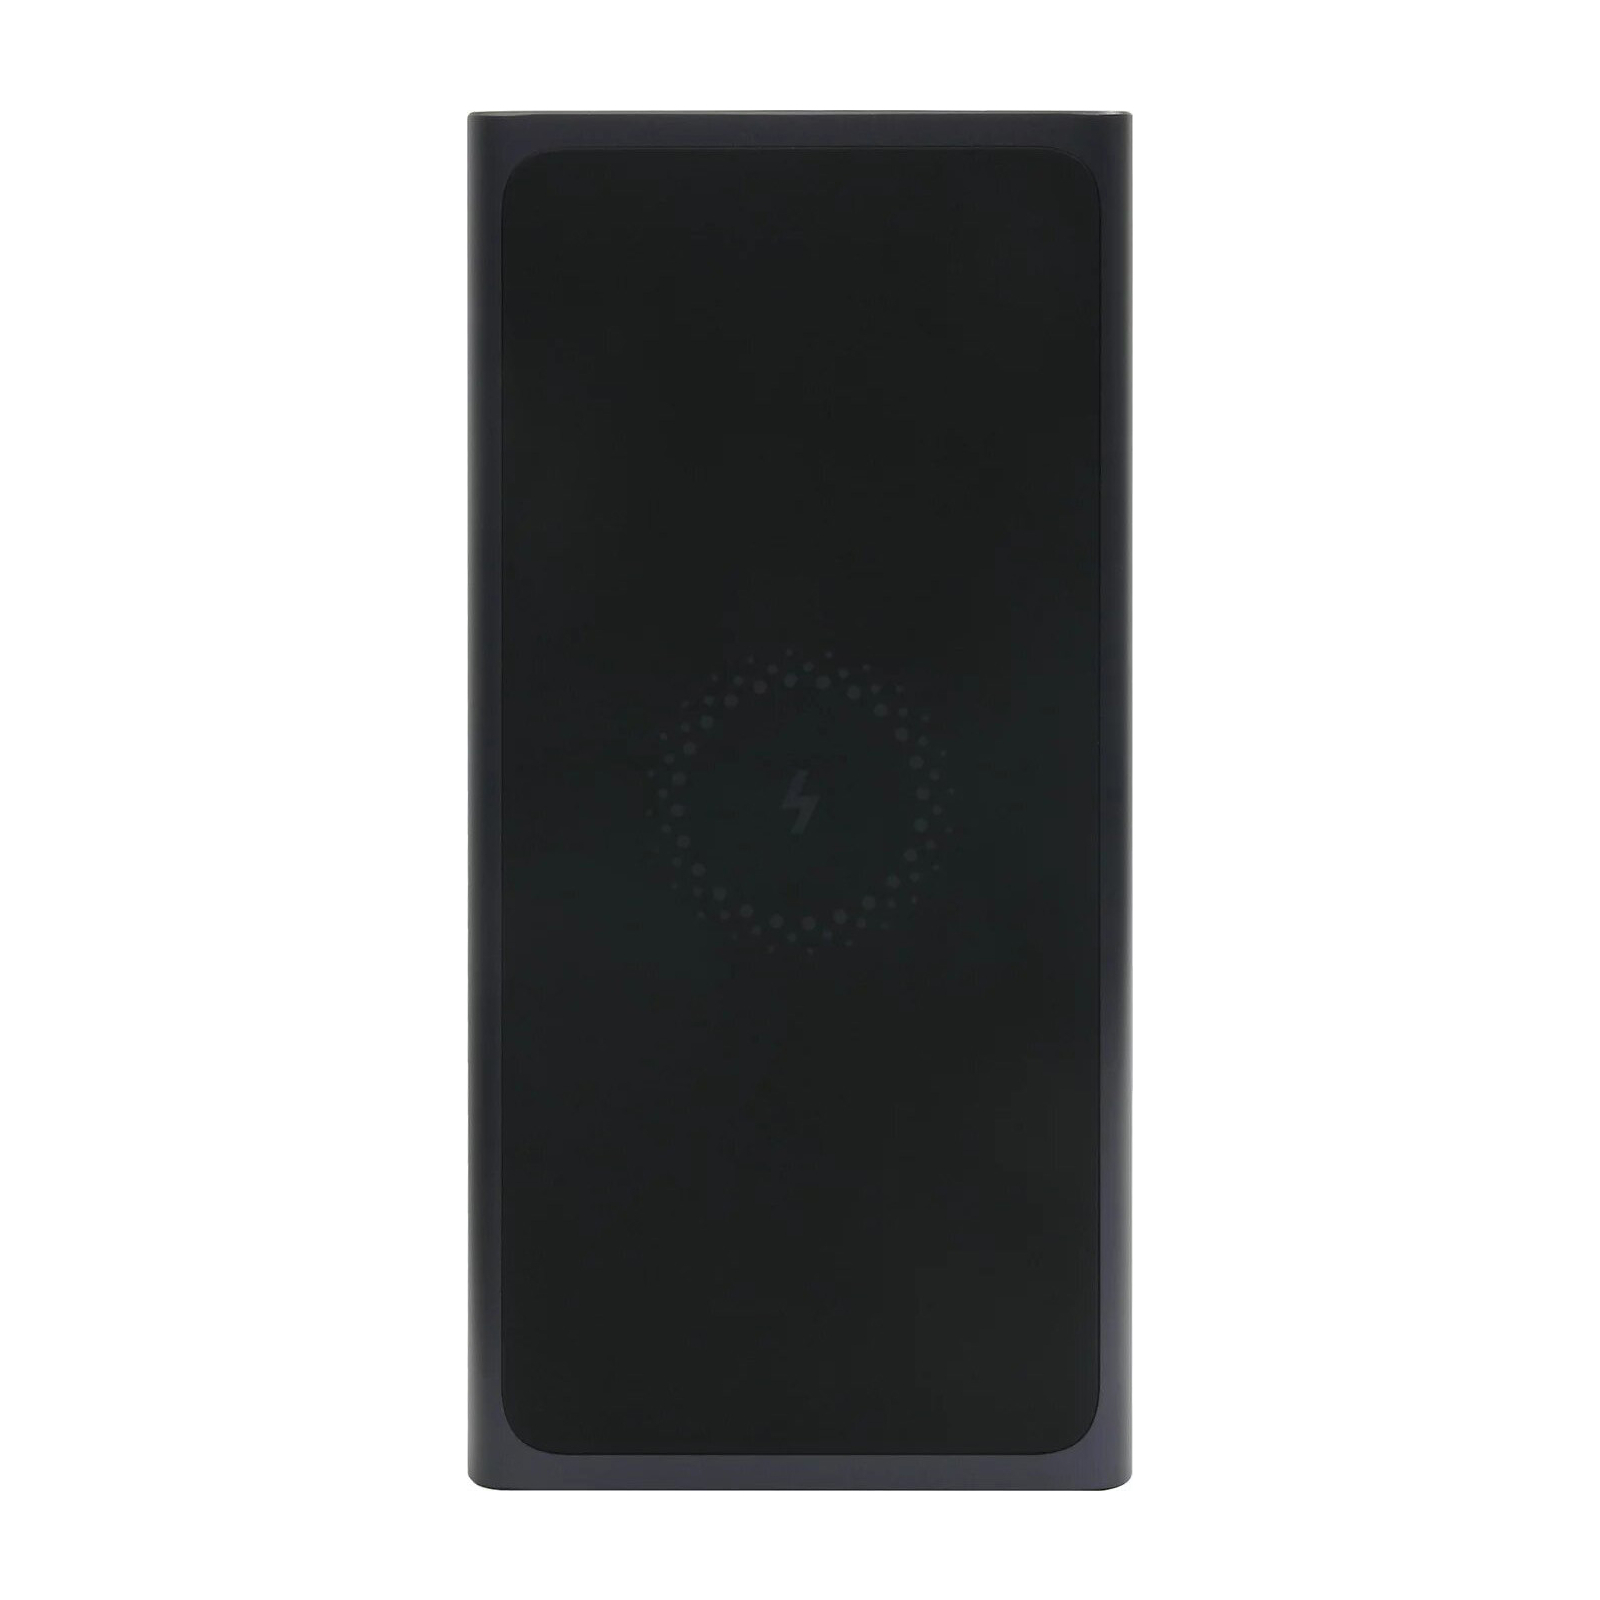 Батарея універсальна Xiaomi Mi Power Bank 10000 mAh QC3.0 + беспроводная зарядка Black (VXN4269 / 495077) зображення 2